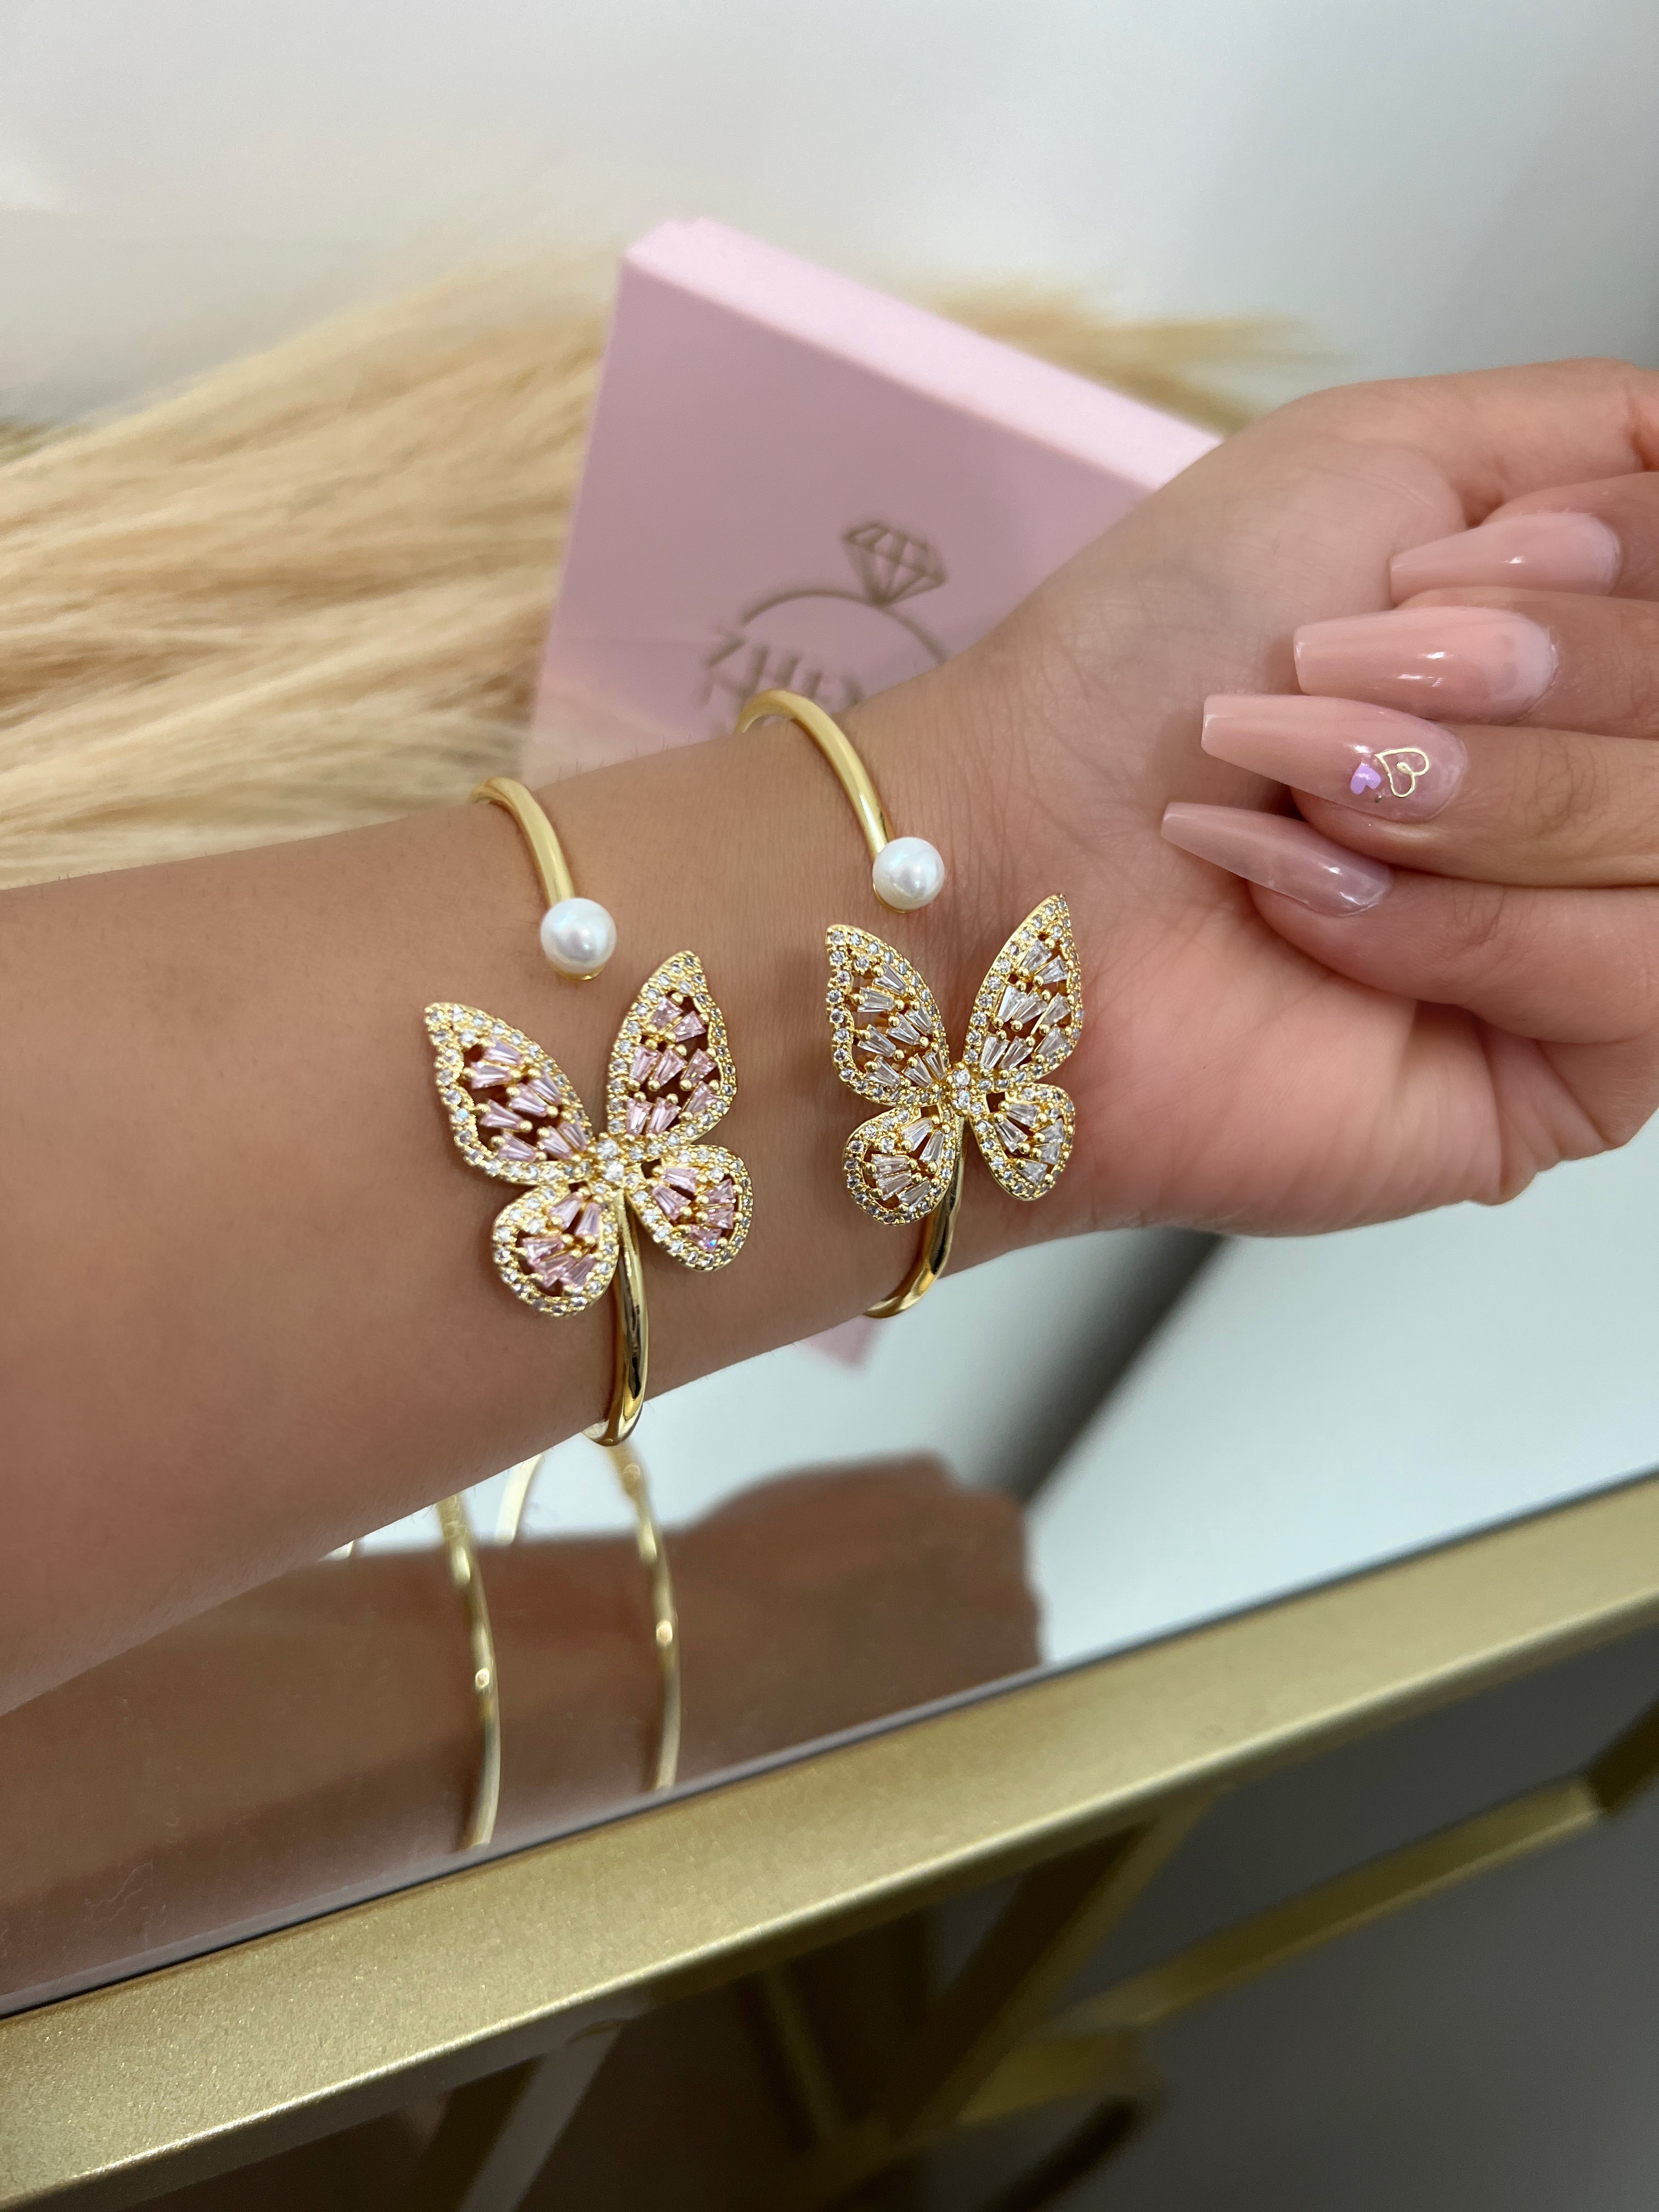 Pearl butterfly bracelet